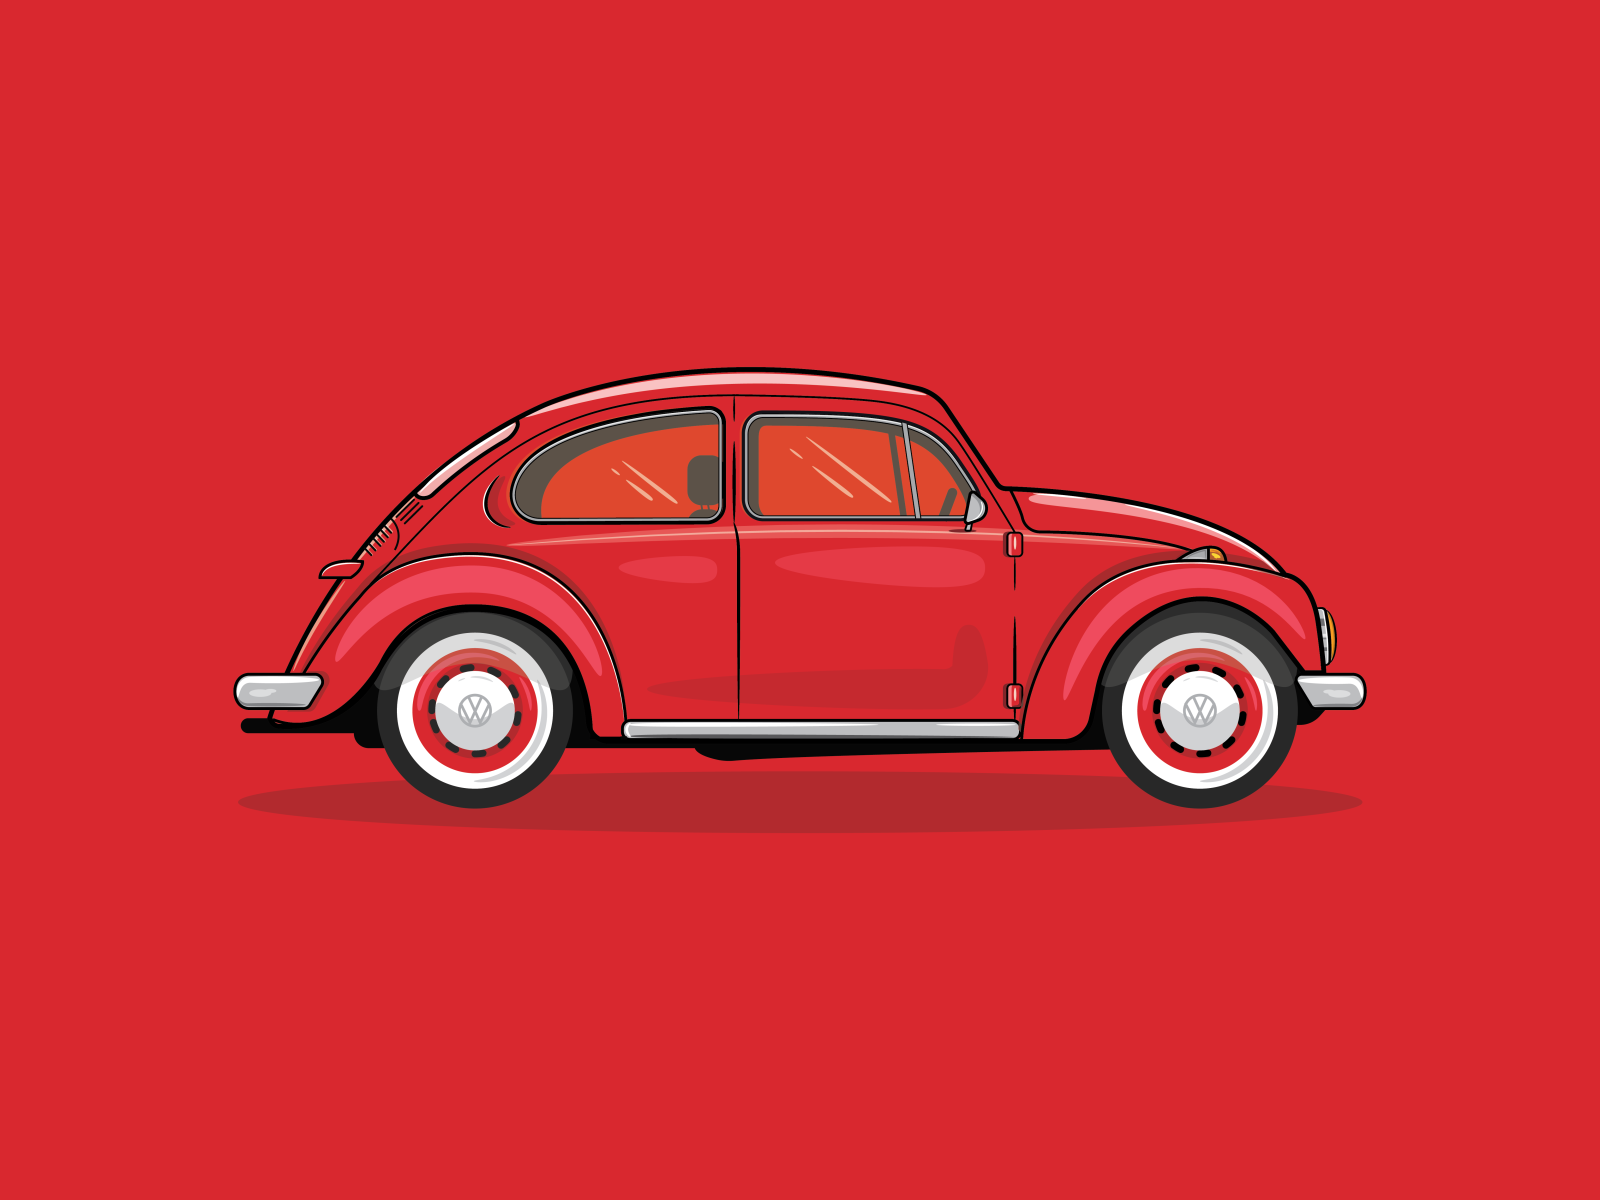 VW Beetle by bokkoart on Dribbble